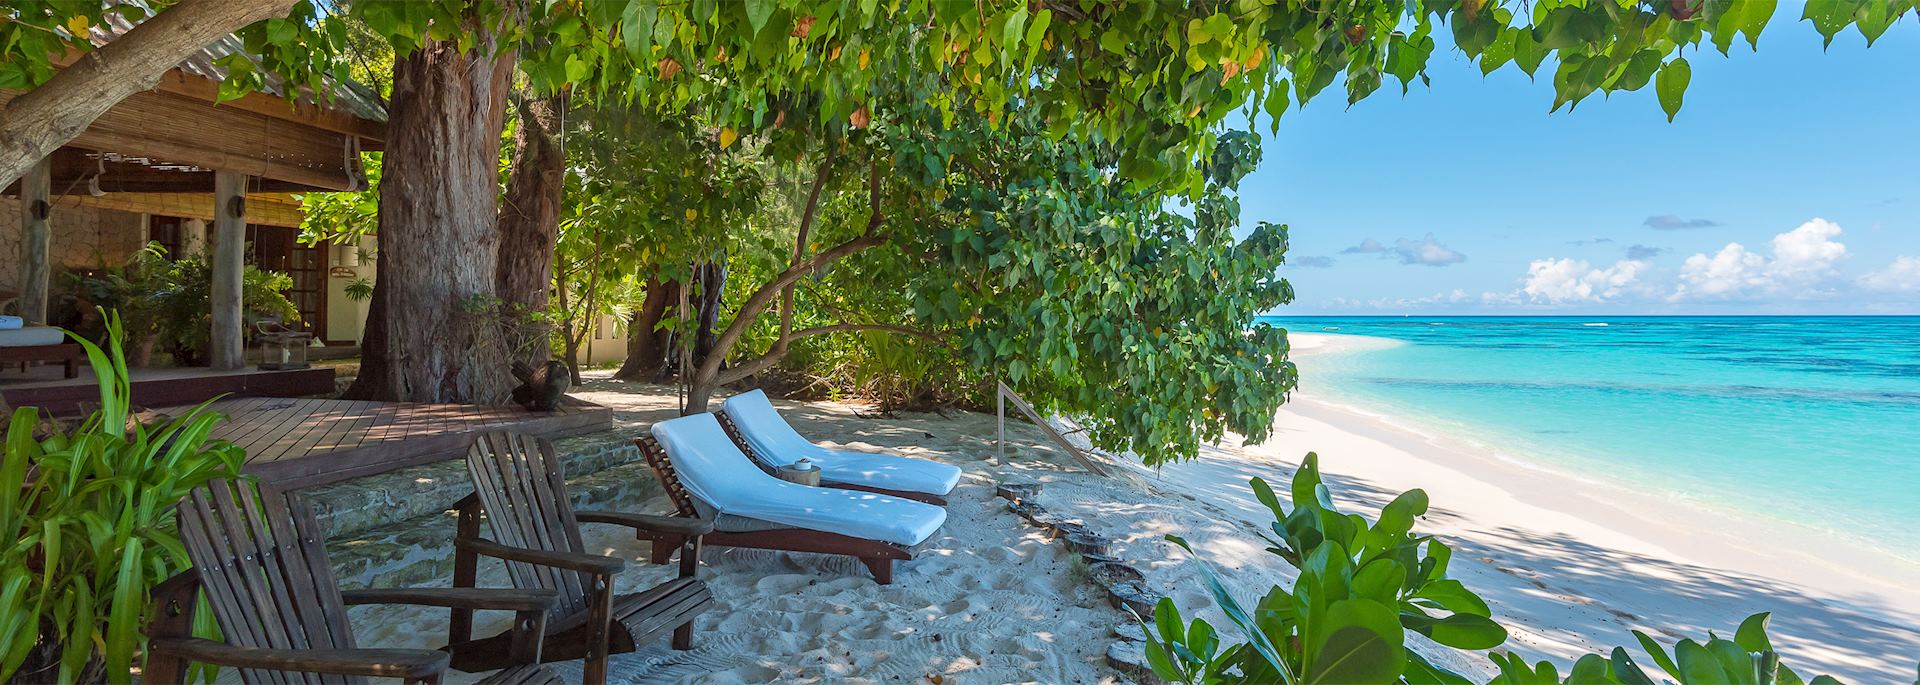 Beach Villa, Denis Private Island